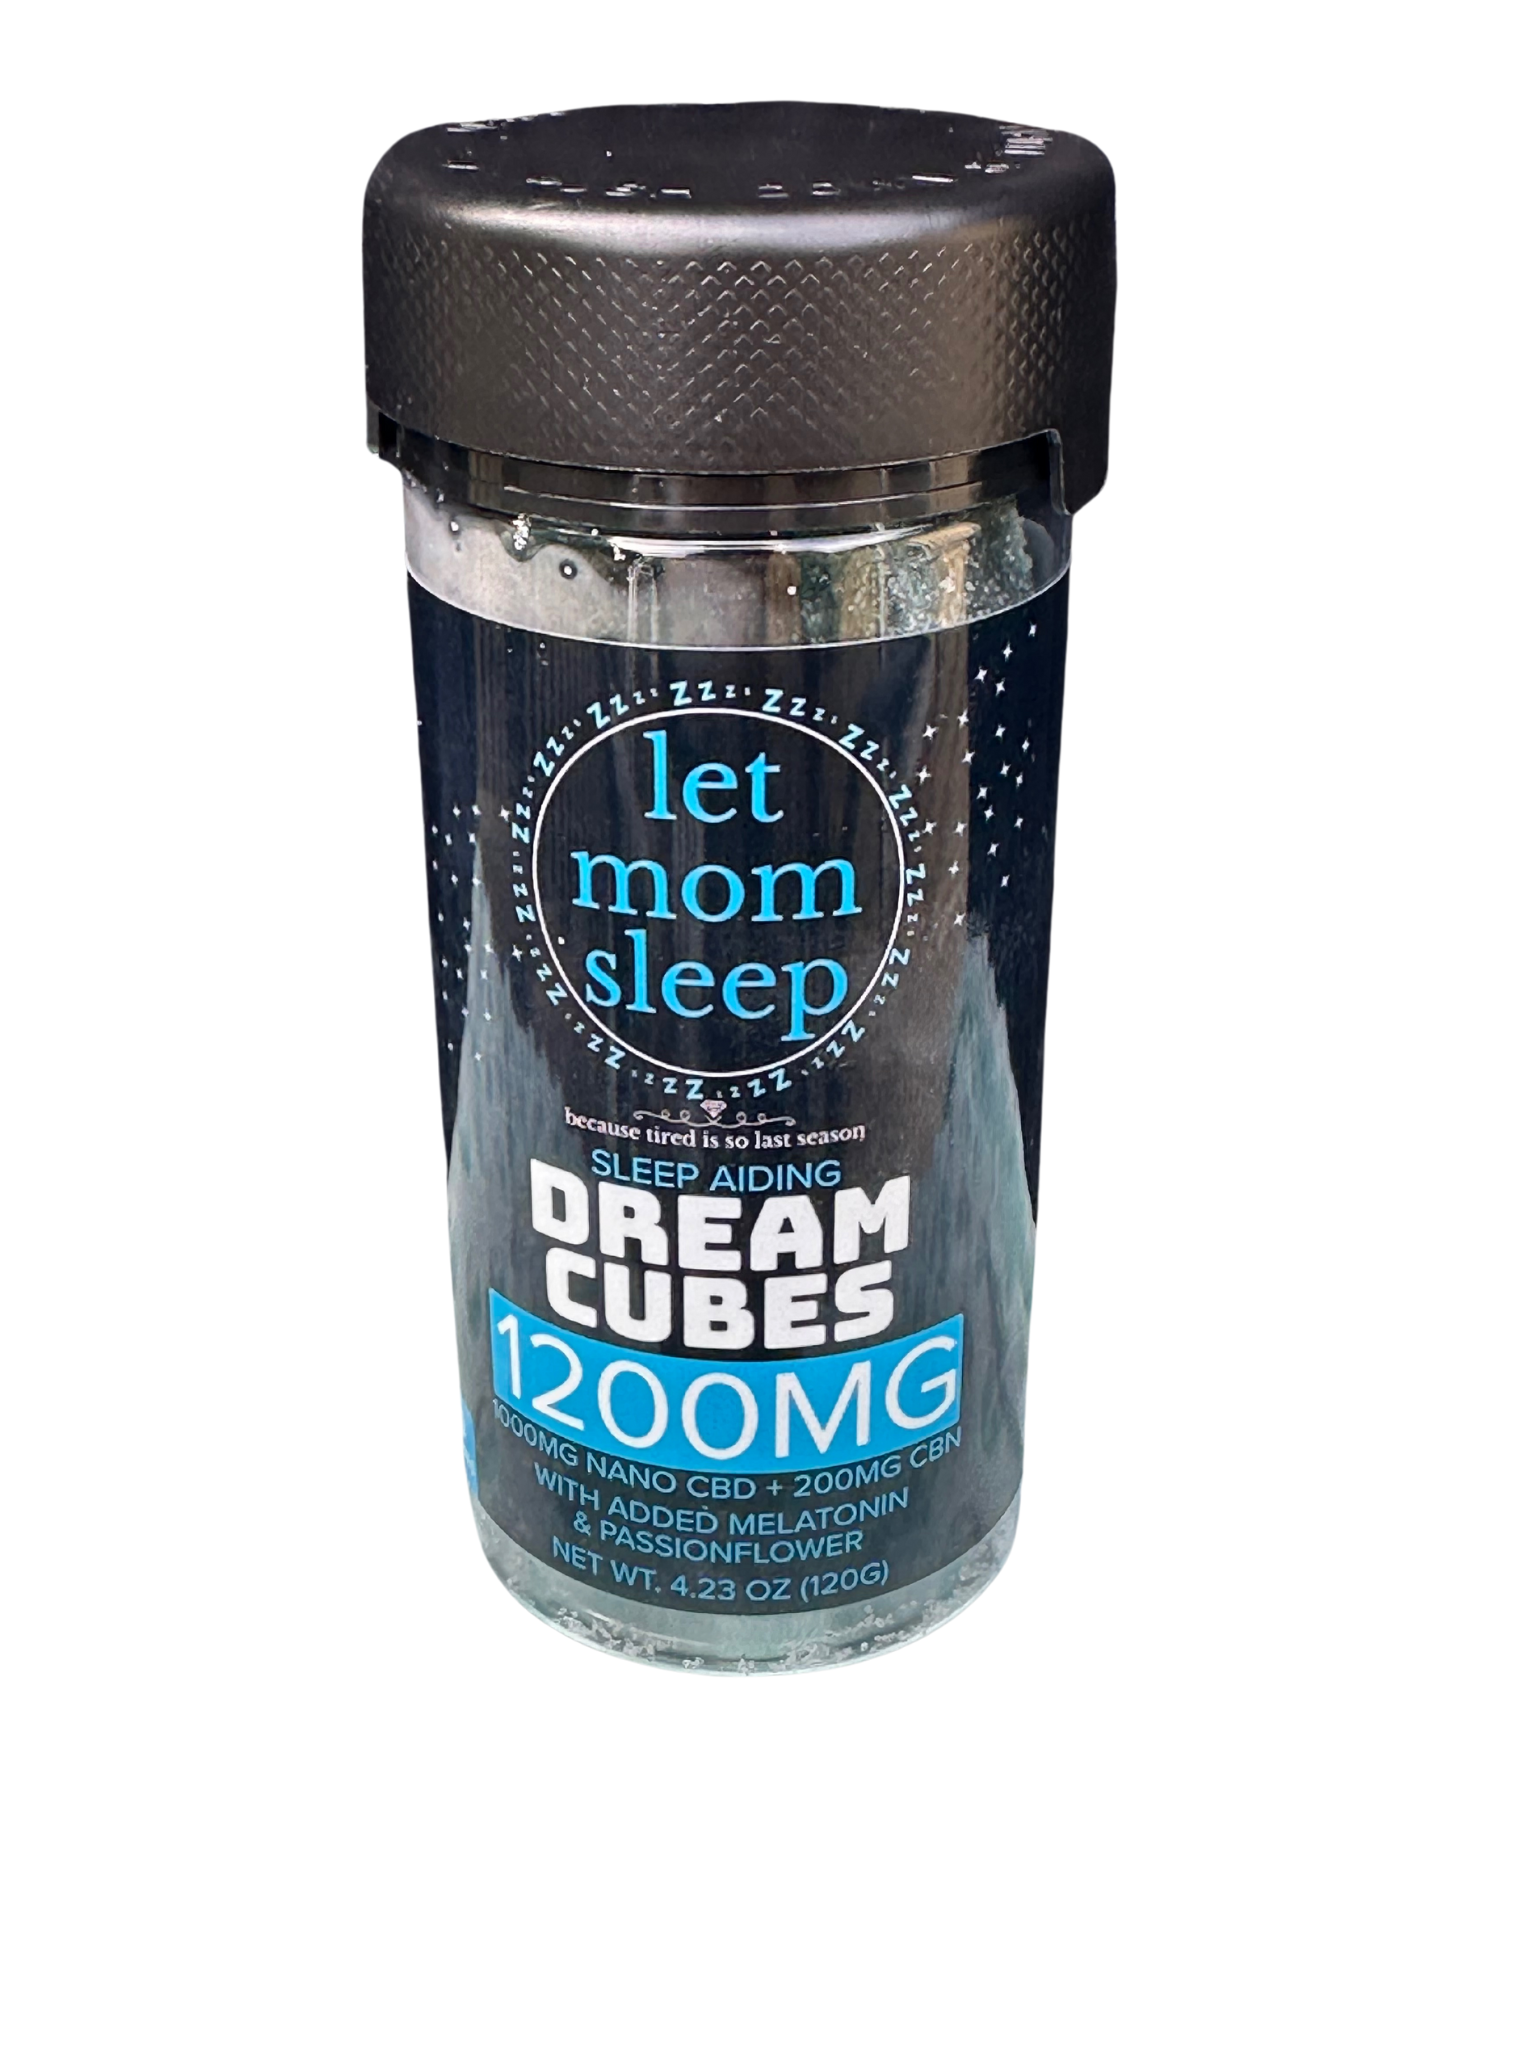 Let Mom Sleep - Bedtime Betty - Dream Cubes Meletonin, Passionflower, Nano CBD, and CBN - Vape Masterz